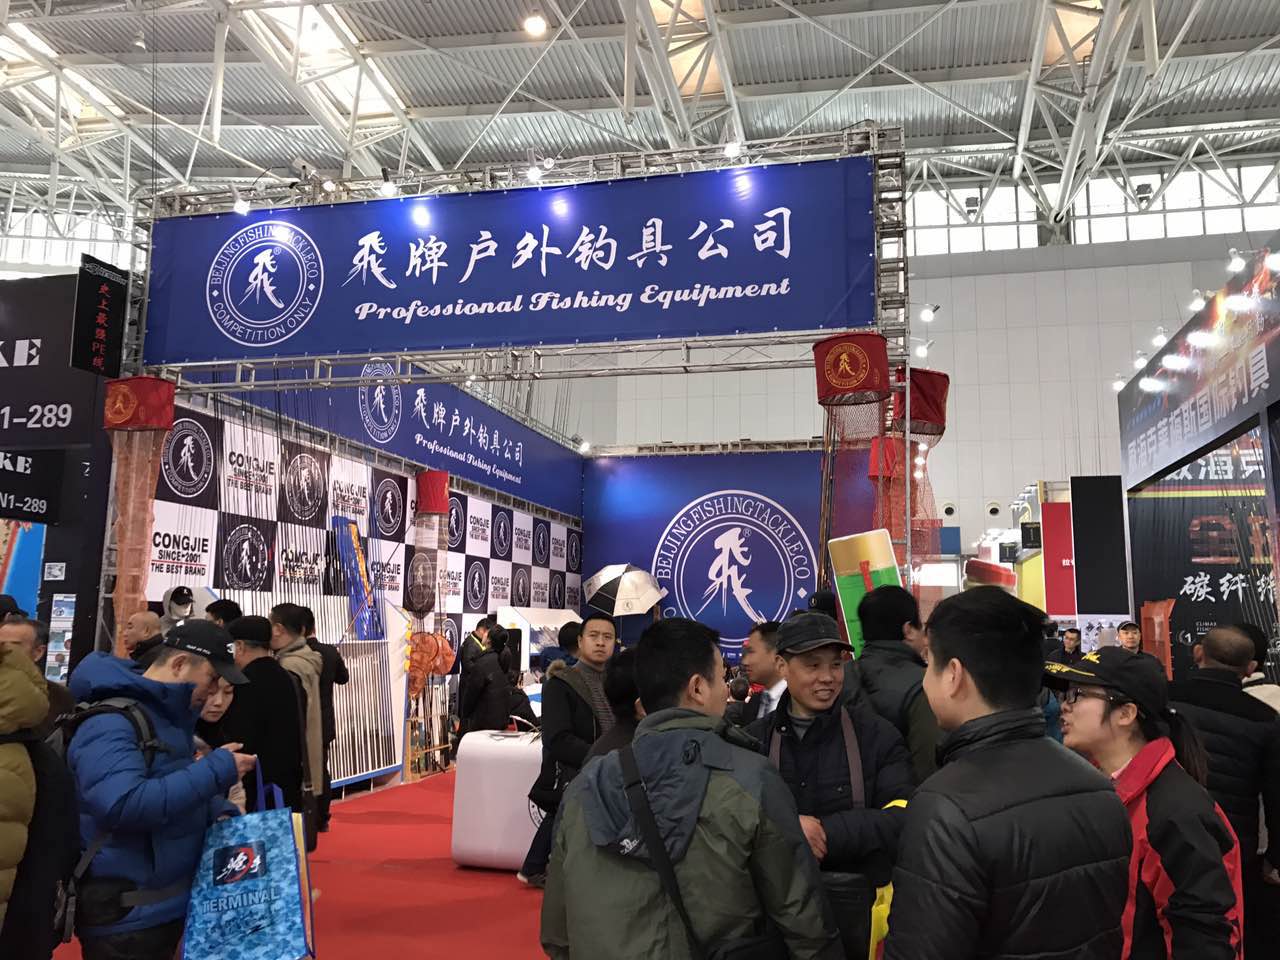 今年是碧海钓具展转移天津以来的第九届展会,在展览规模,展商数量